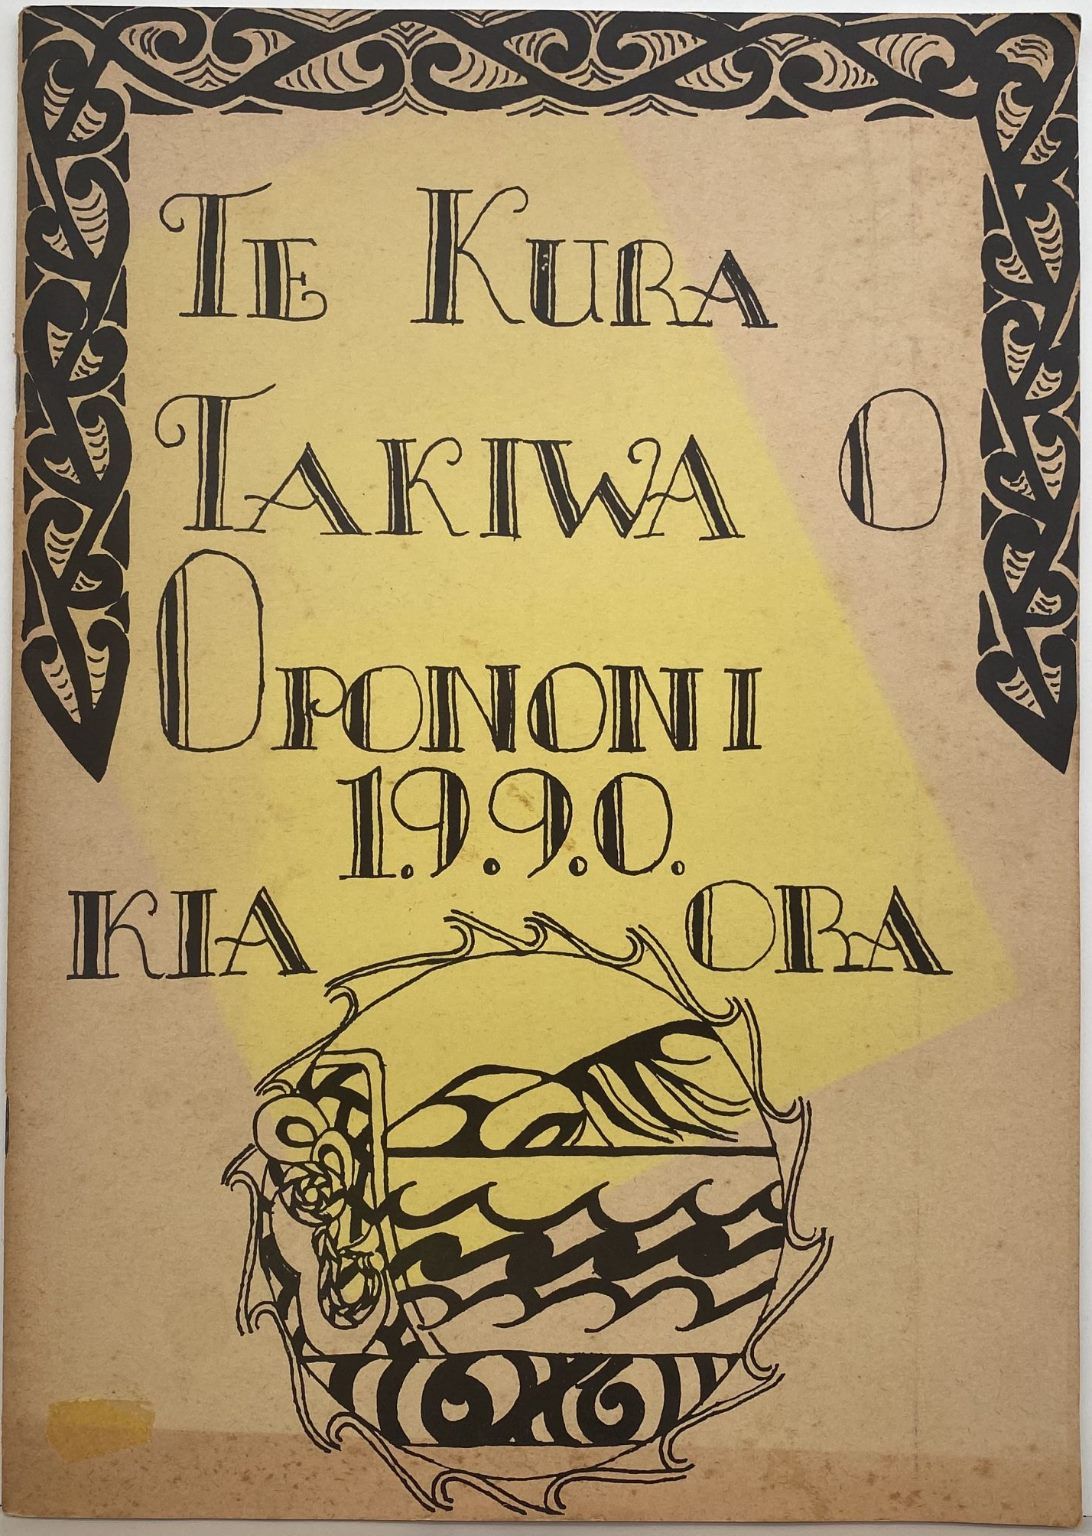 TE KURA TAKIWA O OPONONI - Opononi Area School magazine 1990